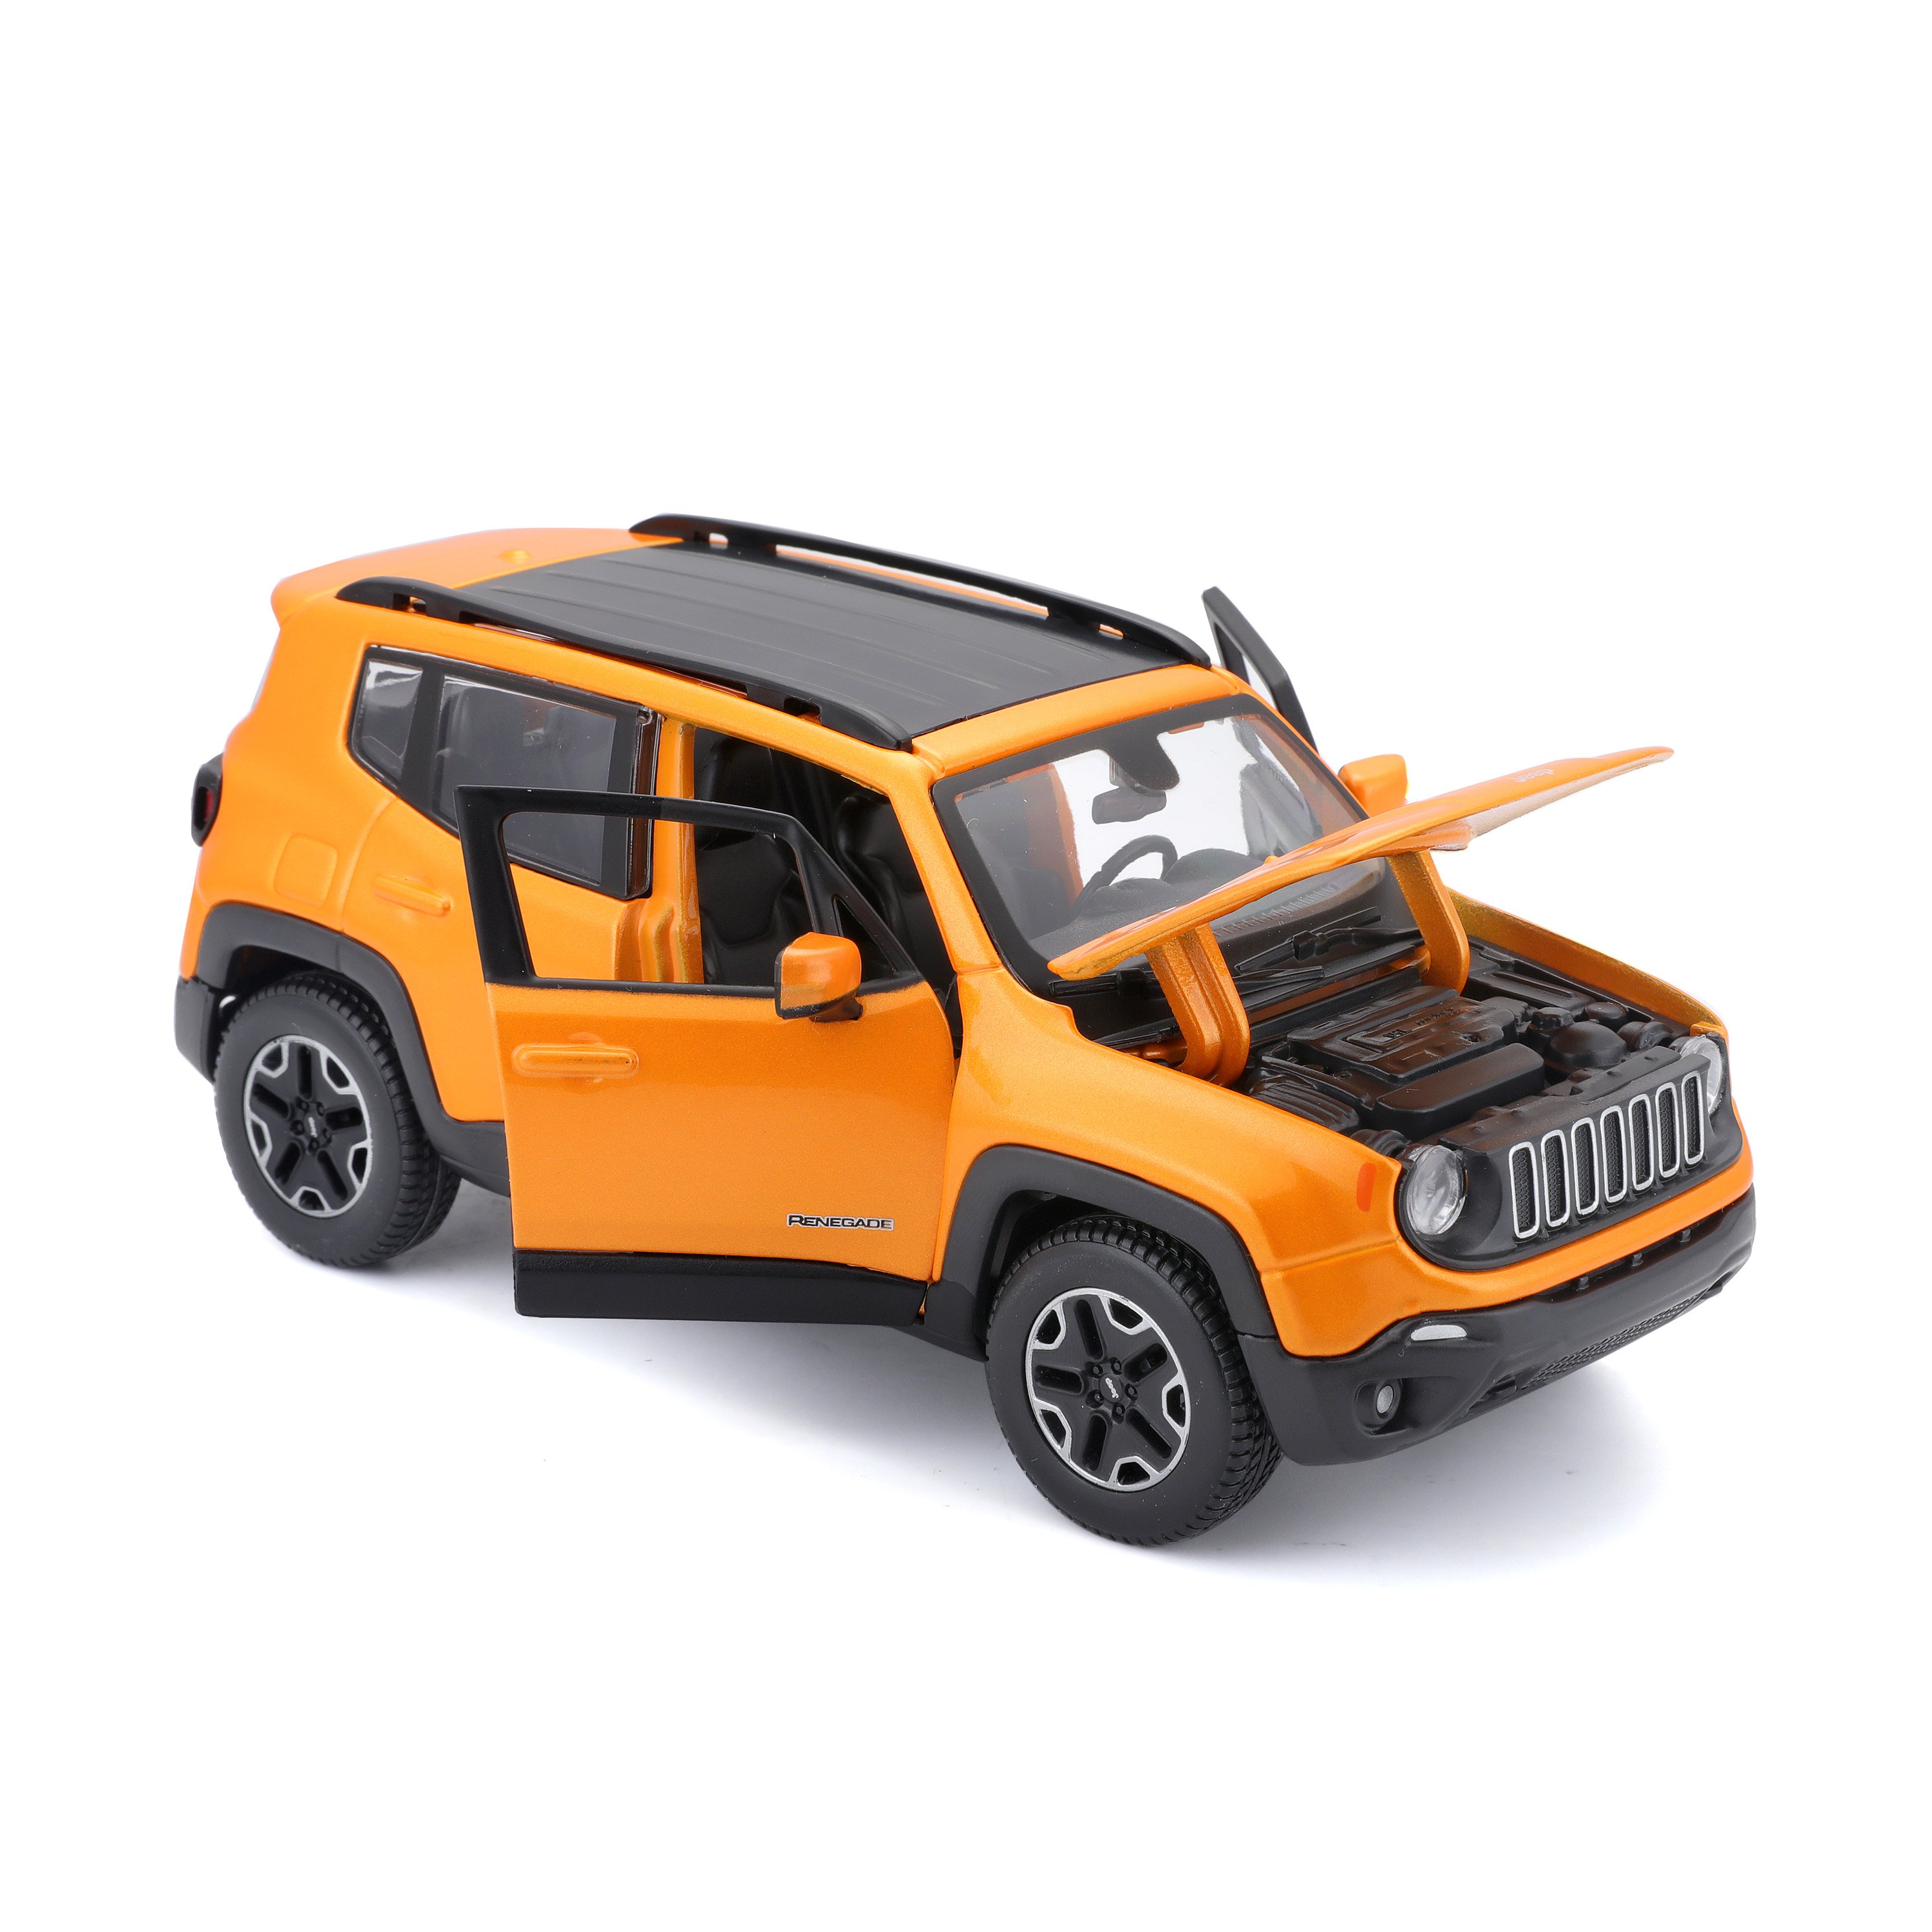 Игровая автомодель Maisto Jeep Renegade, оранжевый металлик, 1:24 (31282 orange) - фото 5